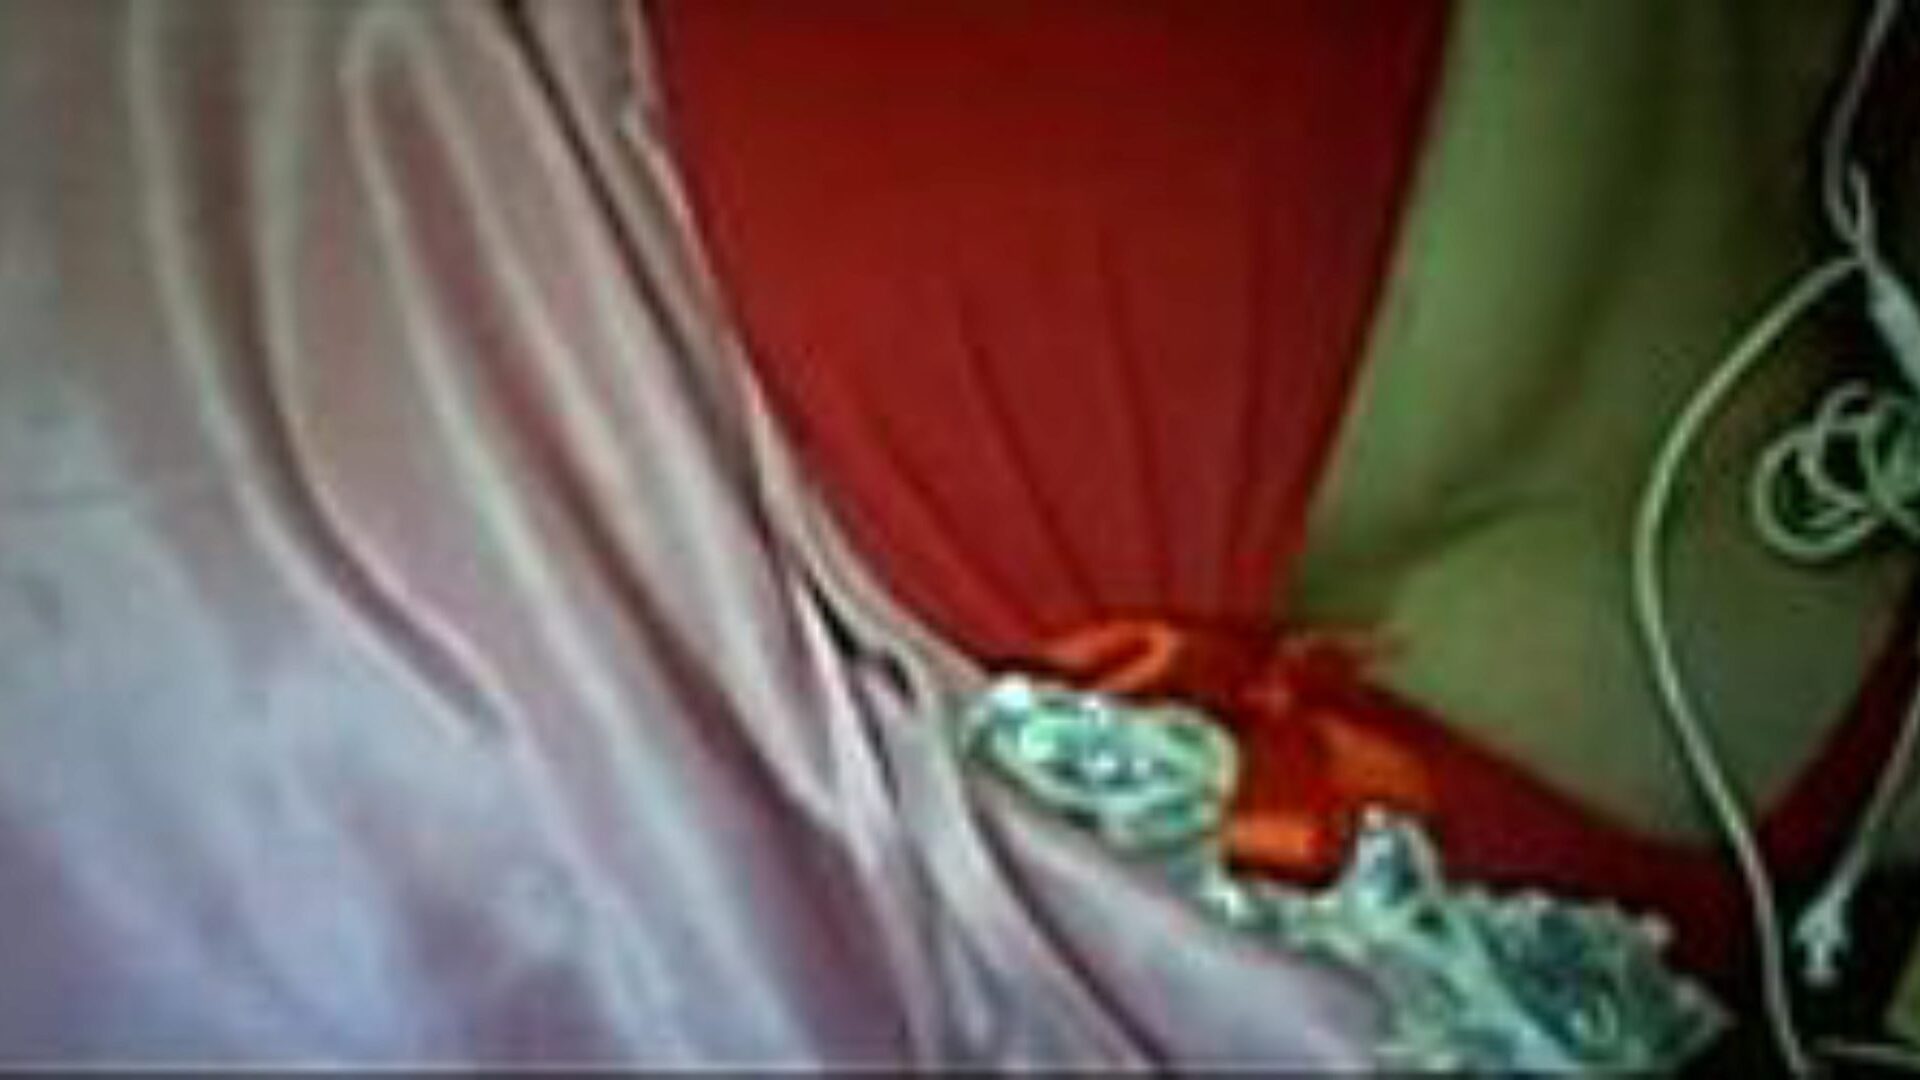 lbwa awi: peitos grandes grátis e vídeo pornô de agente a6 - xhamster assistir vídeo de relações sexuais em tubo lbwa awi grátis para todos no xhamster, com a coleção mais sexy de árabes egípcios, peitos grandes e shows de clipes pornôs de agentes